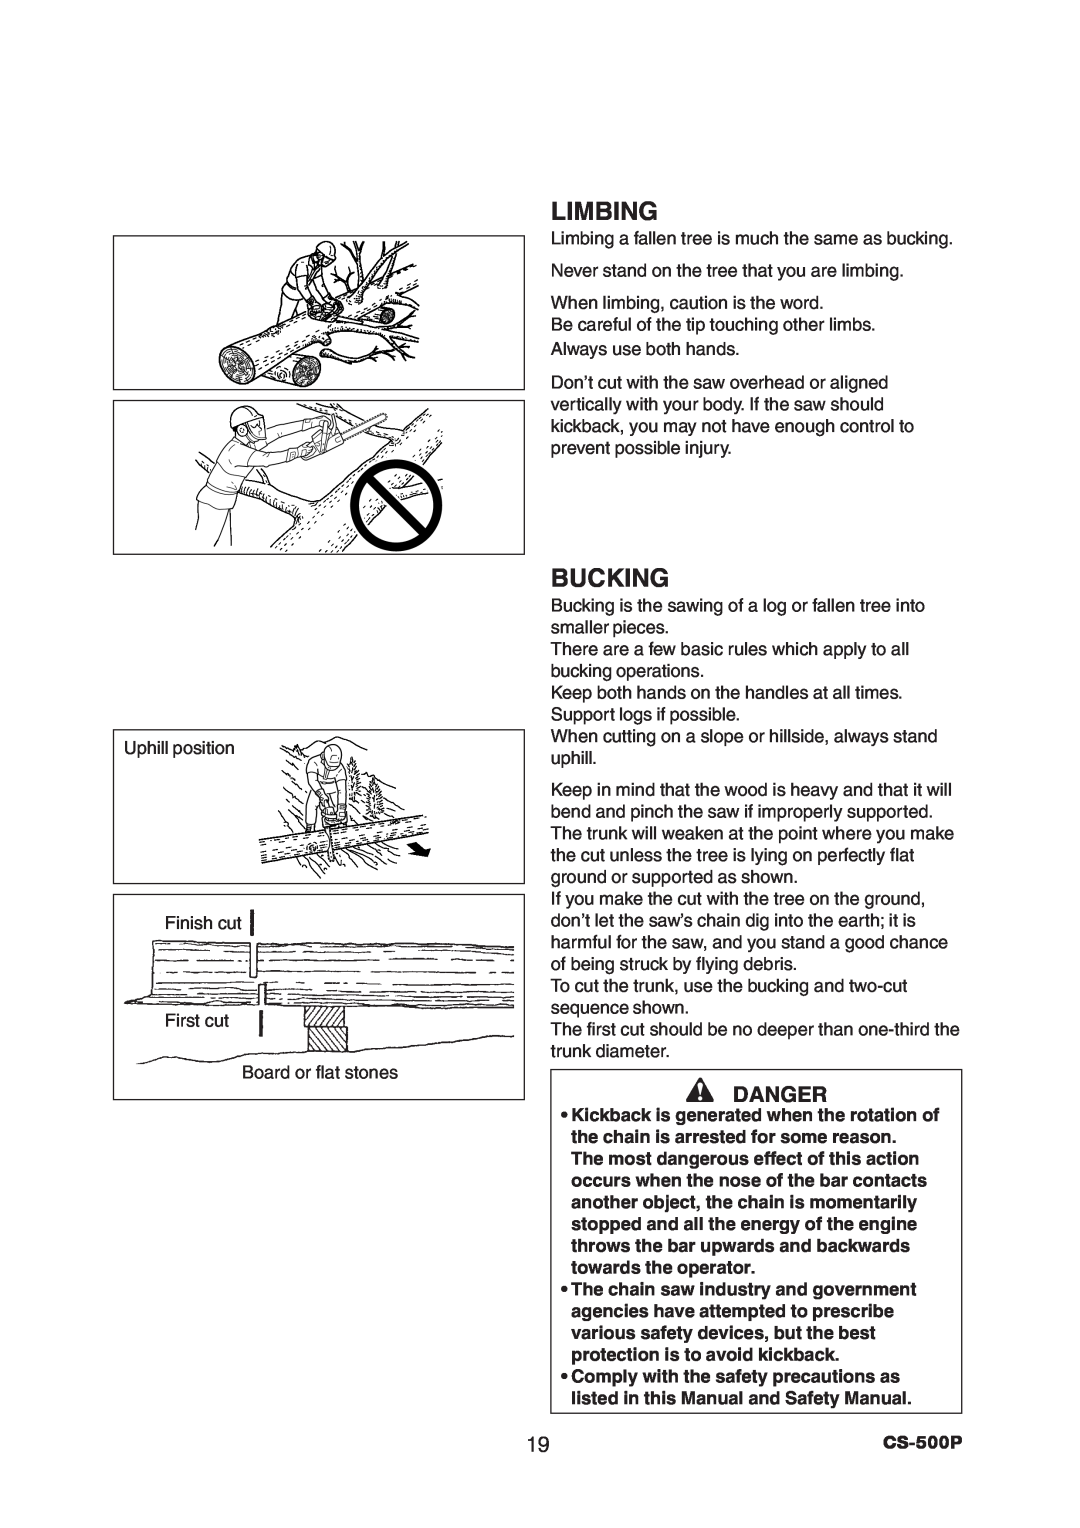 Echo CS-500P instruction manual Limbing, Bucking, Danger 